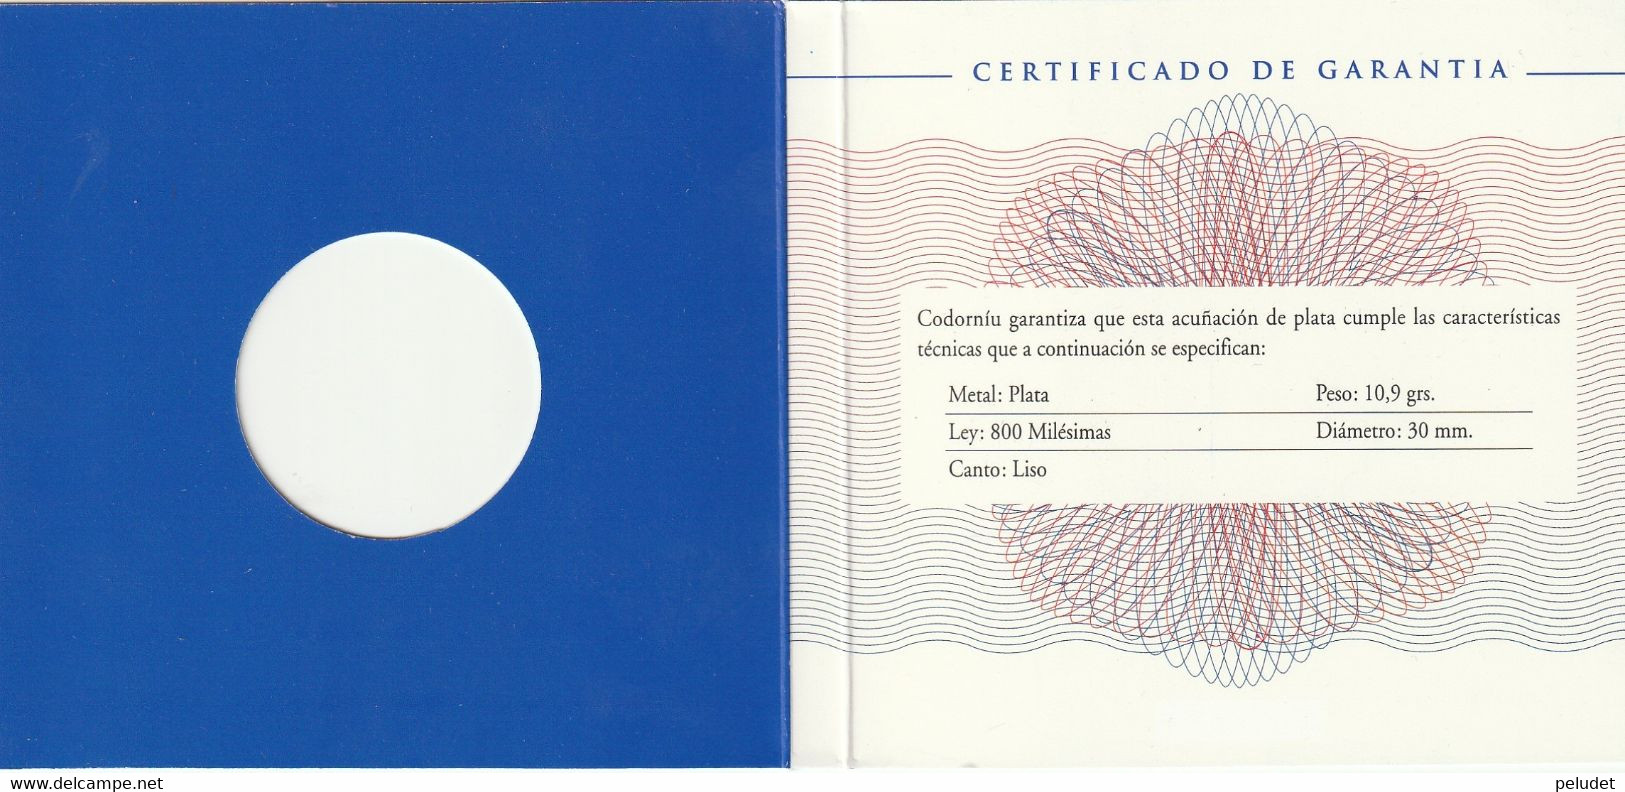 Europa, Medalla Medaille Medal, Enero 1999, Codorniu, 1, Con Certificado De Garantia, With Warranty Certificate - Professionals/Firms